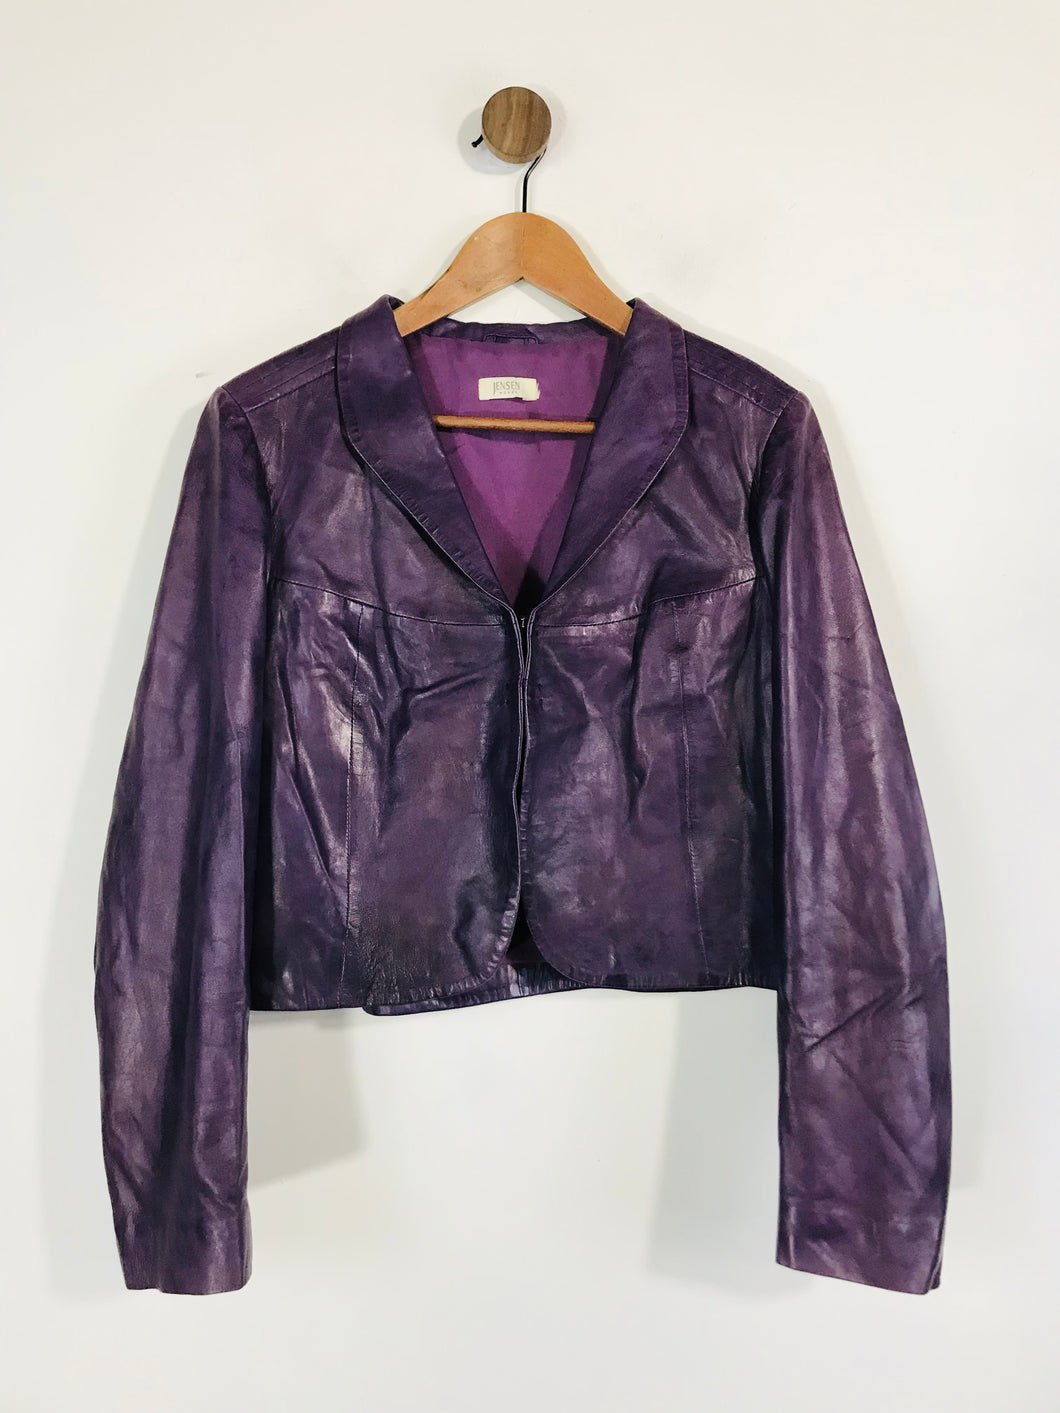 Jensen Women's Leather Crop Jacket | M UK10-12 | Purple